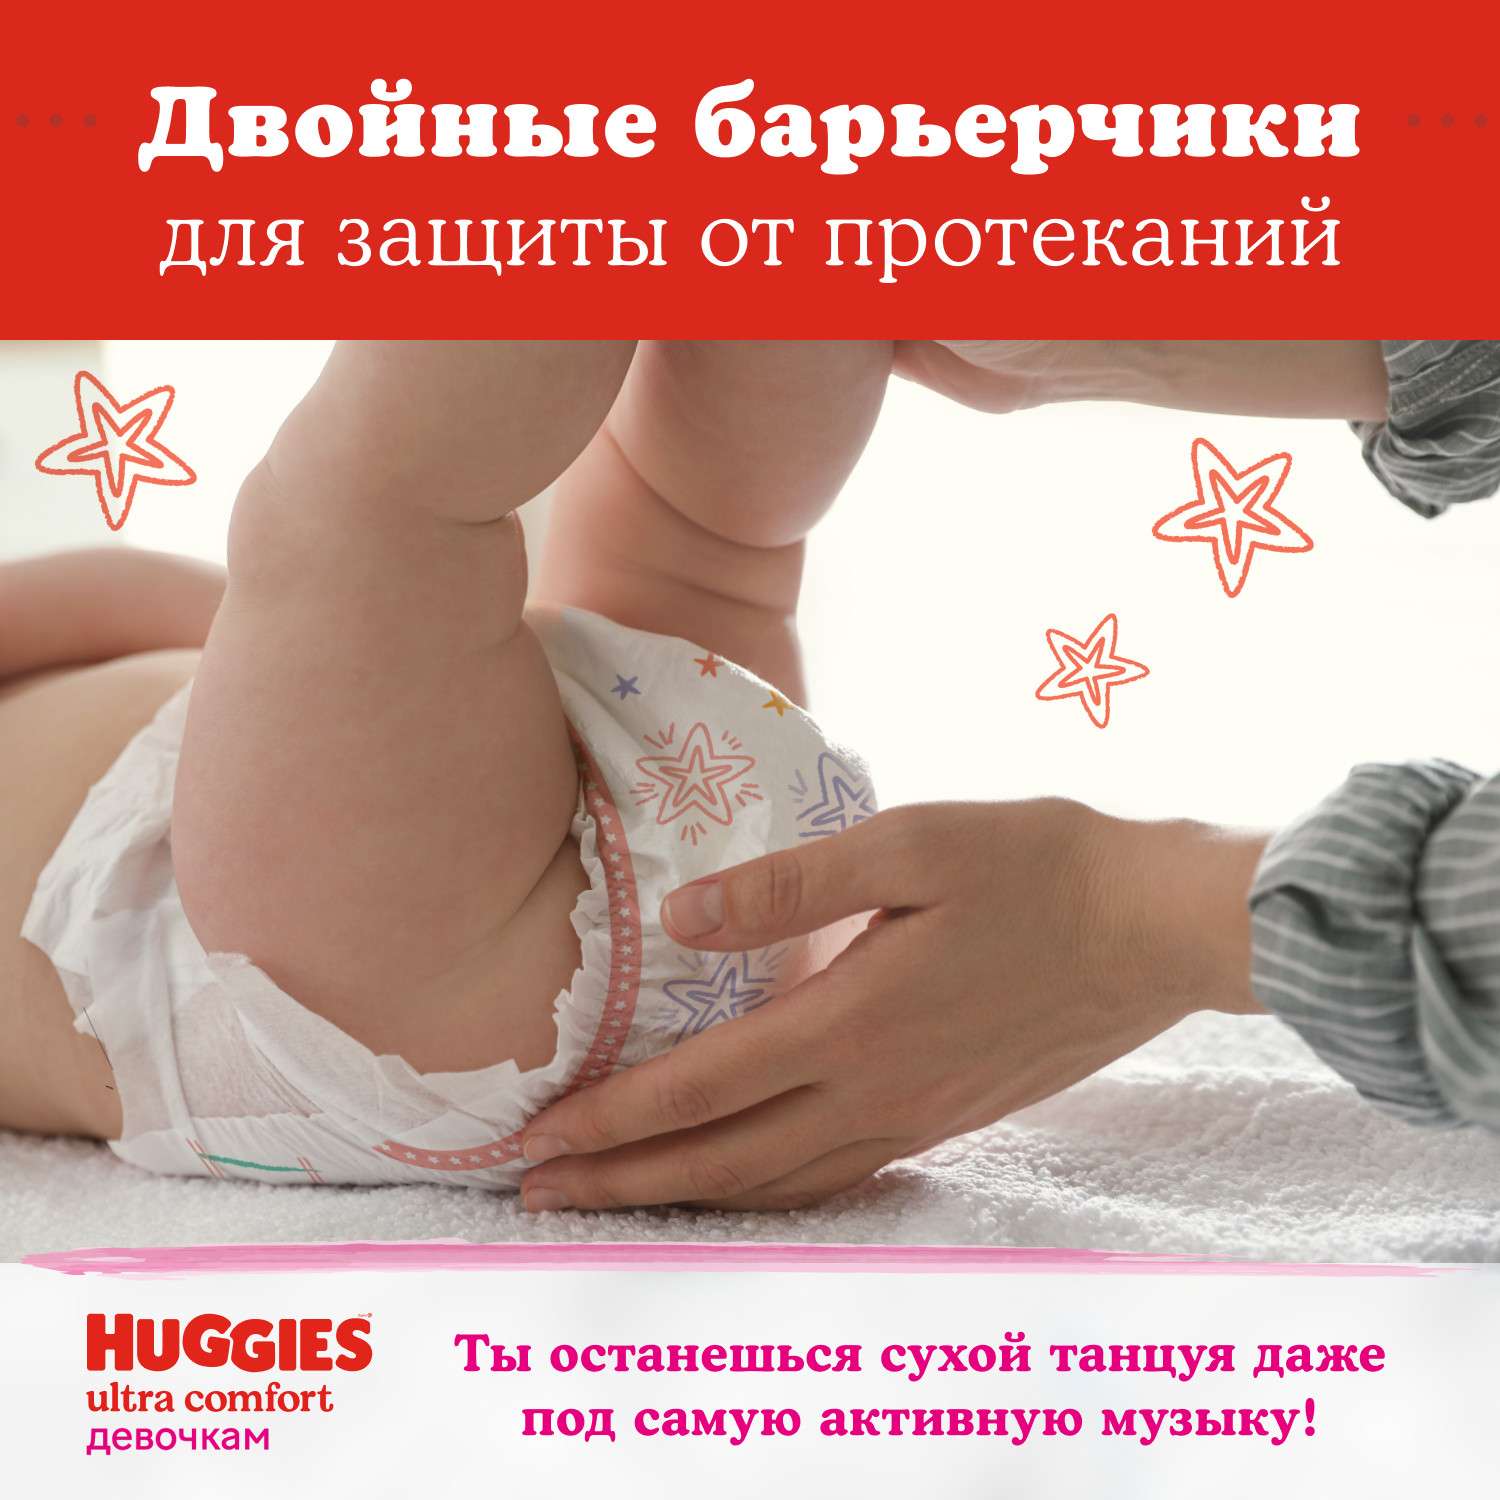 Подгузники Huggies Ultra Comfort для девочек 4 8-14кг 100шт - фото 9